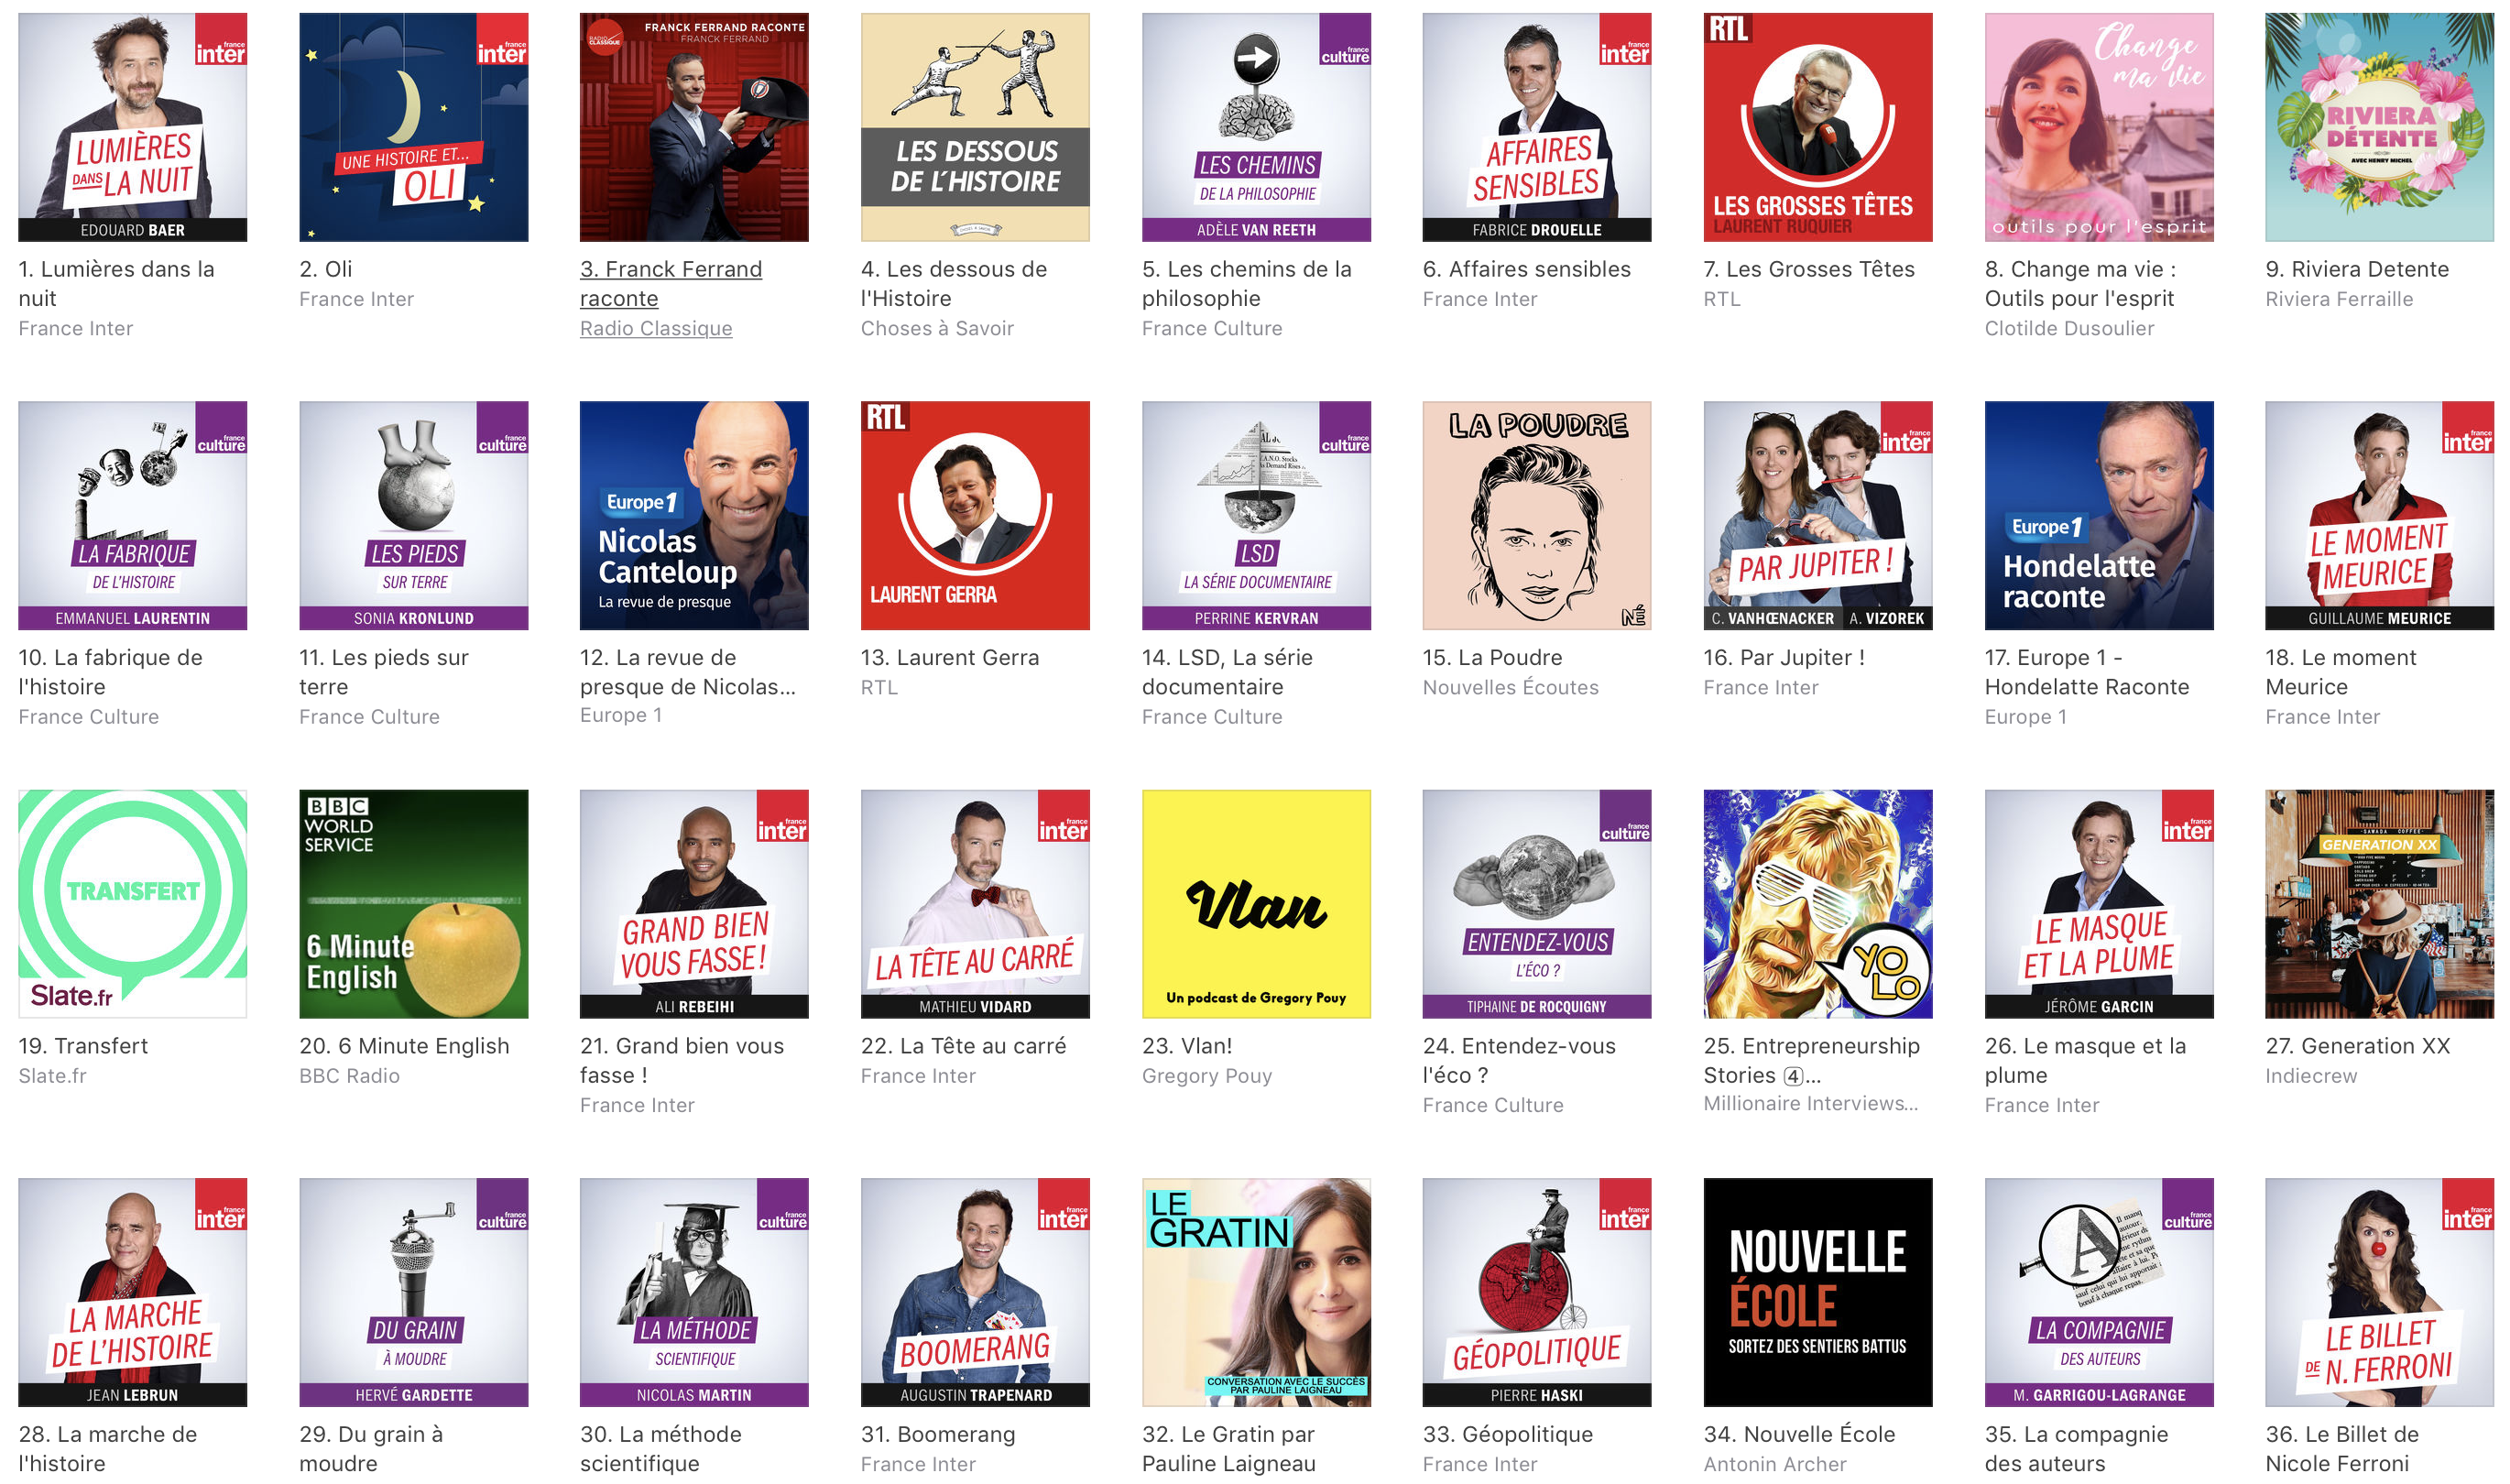 78 des podcasts telecharges sont ecoutes